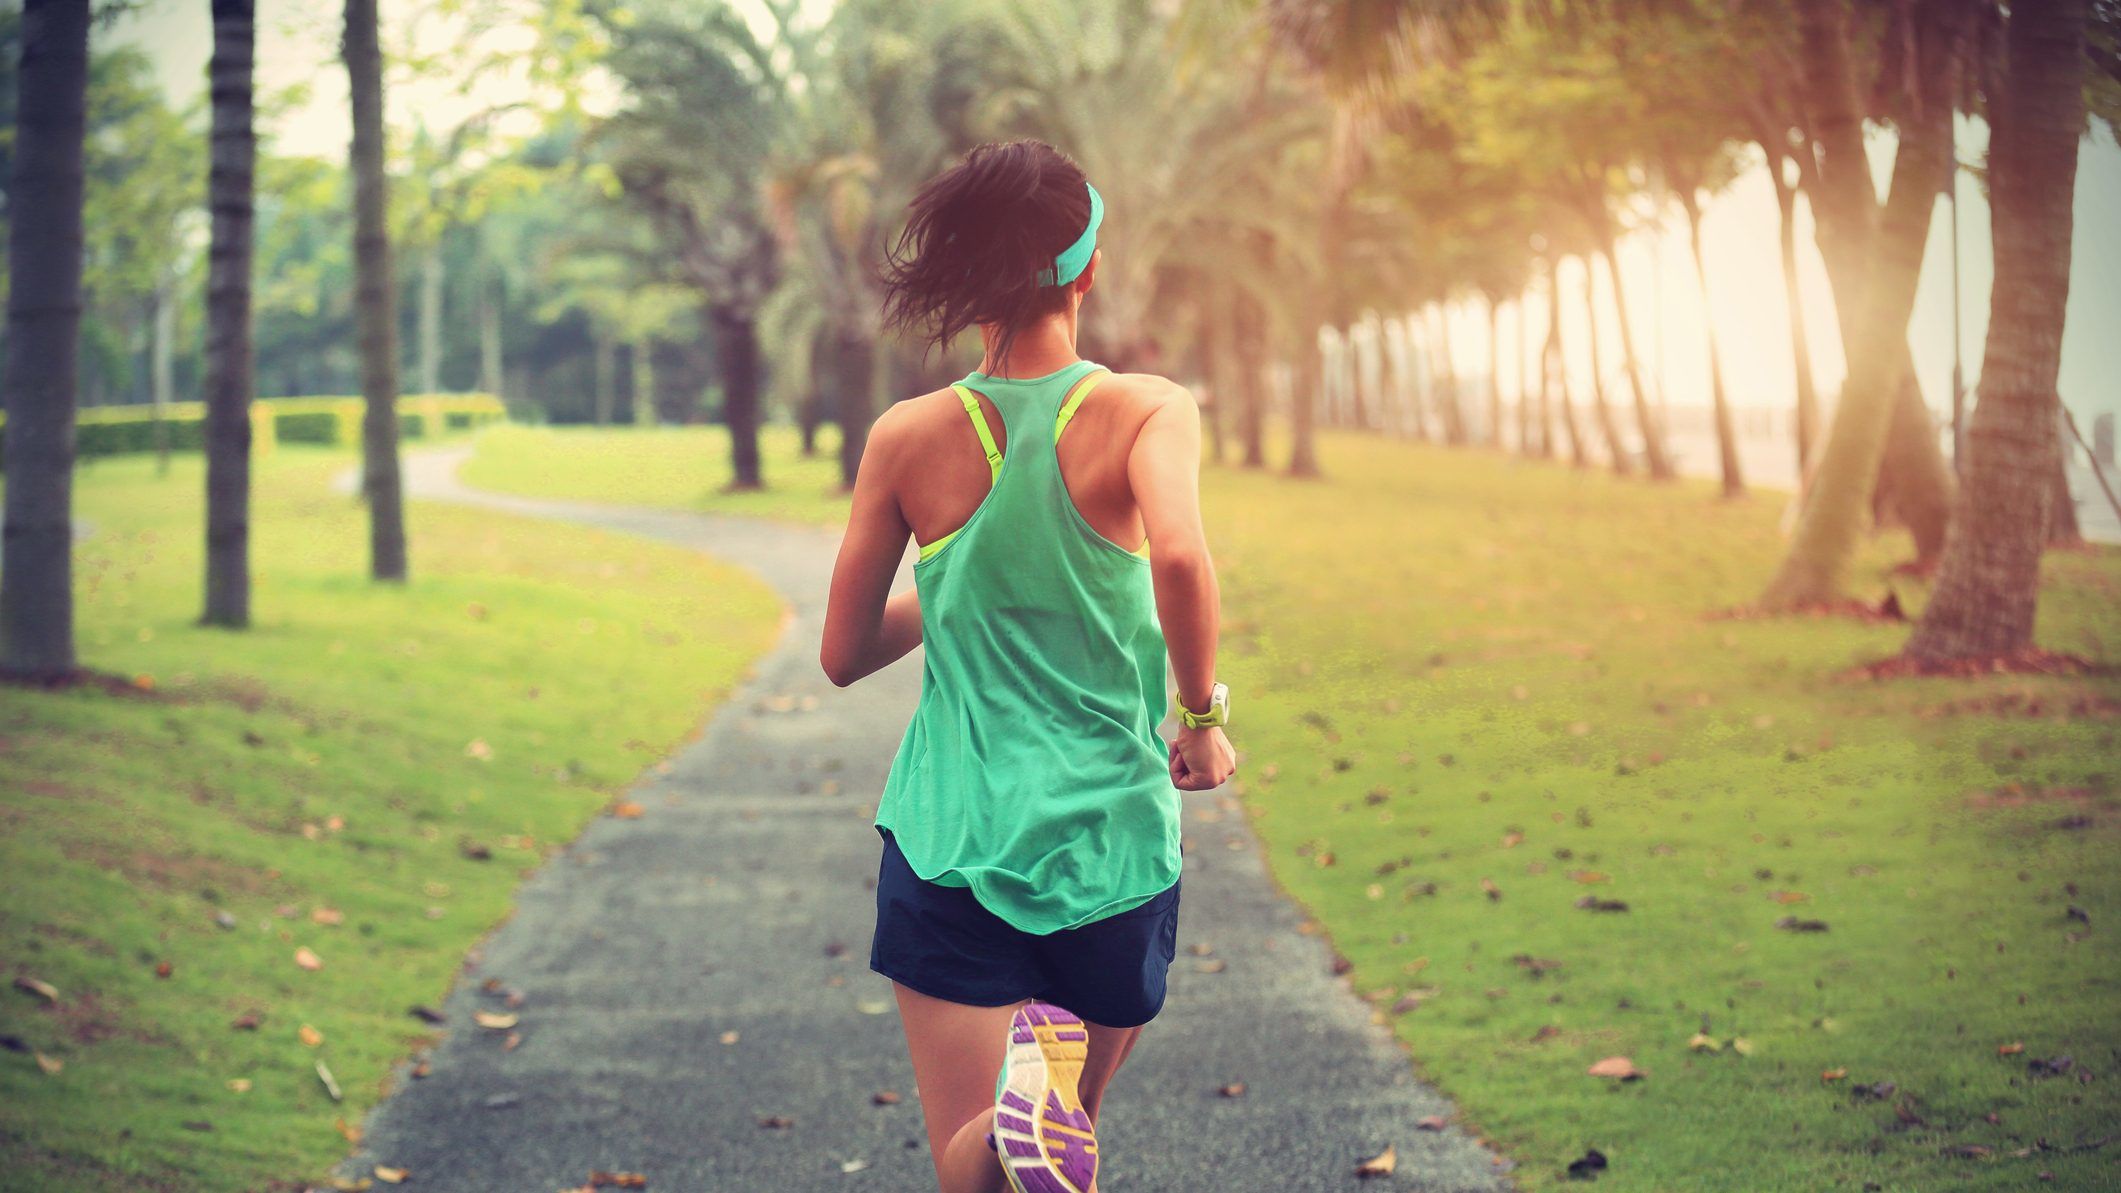 Nemcsak a testnek, a mentális egészségnek is jót tesz a futás